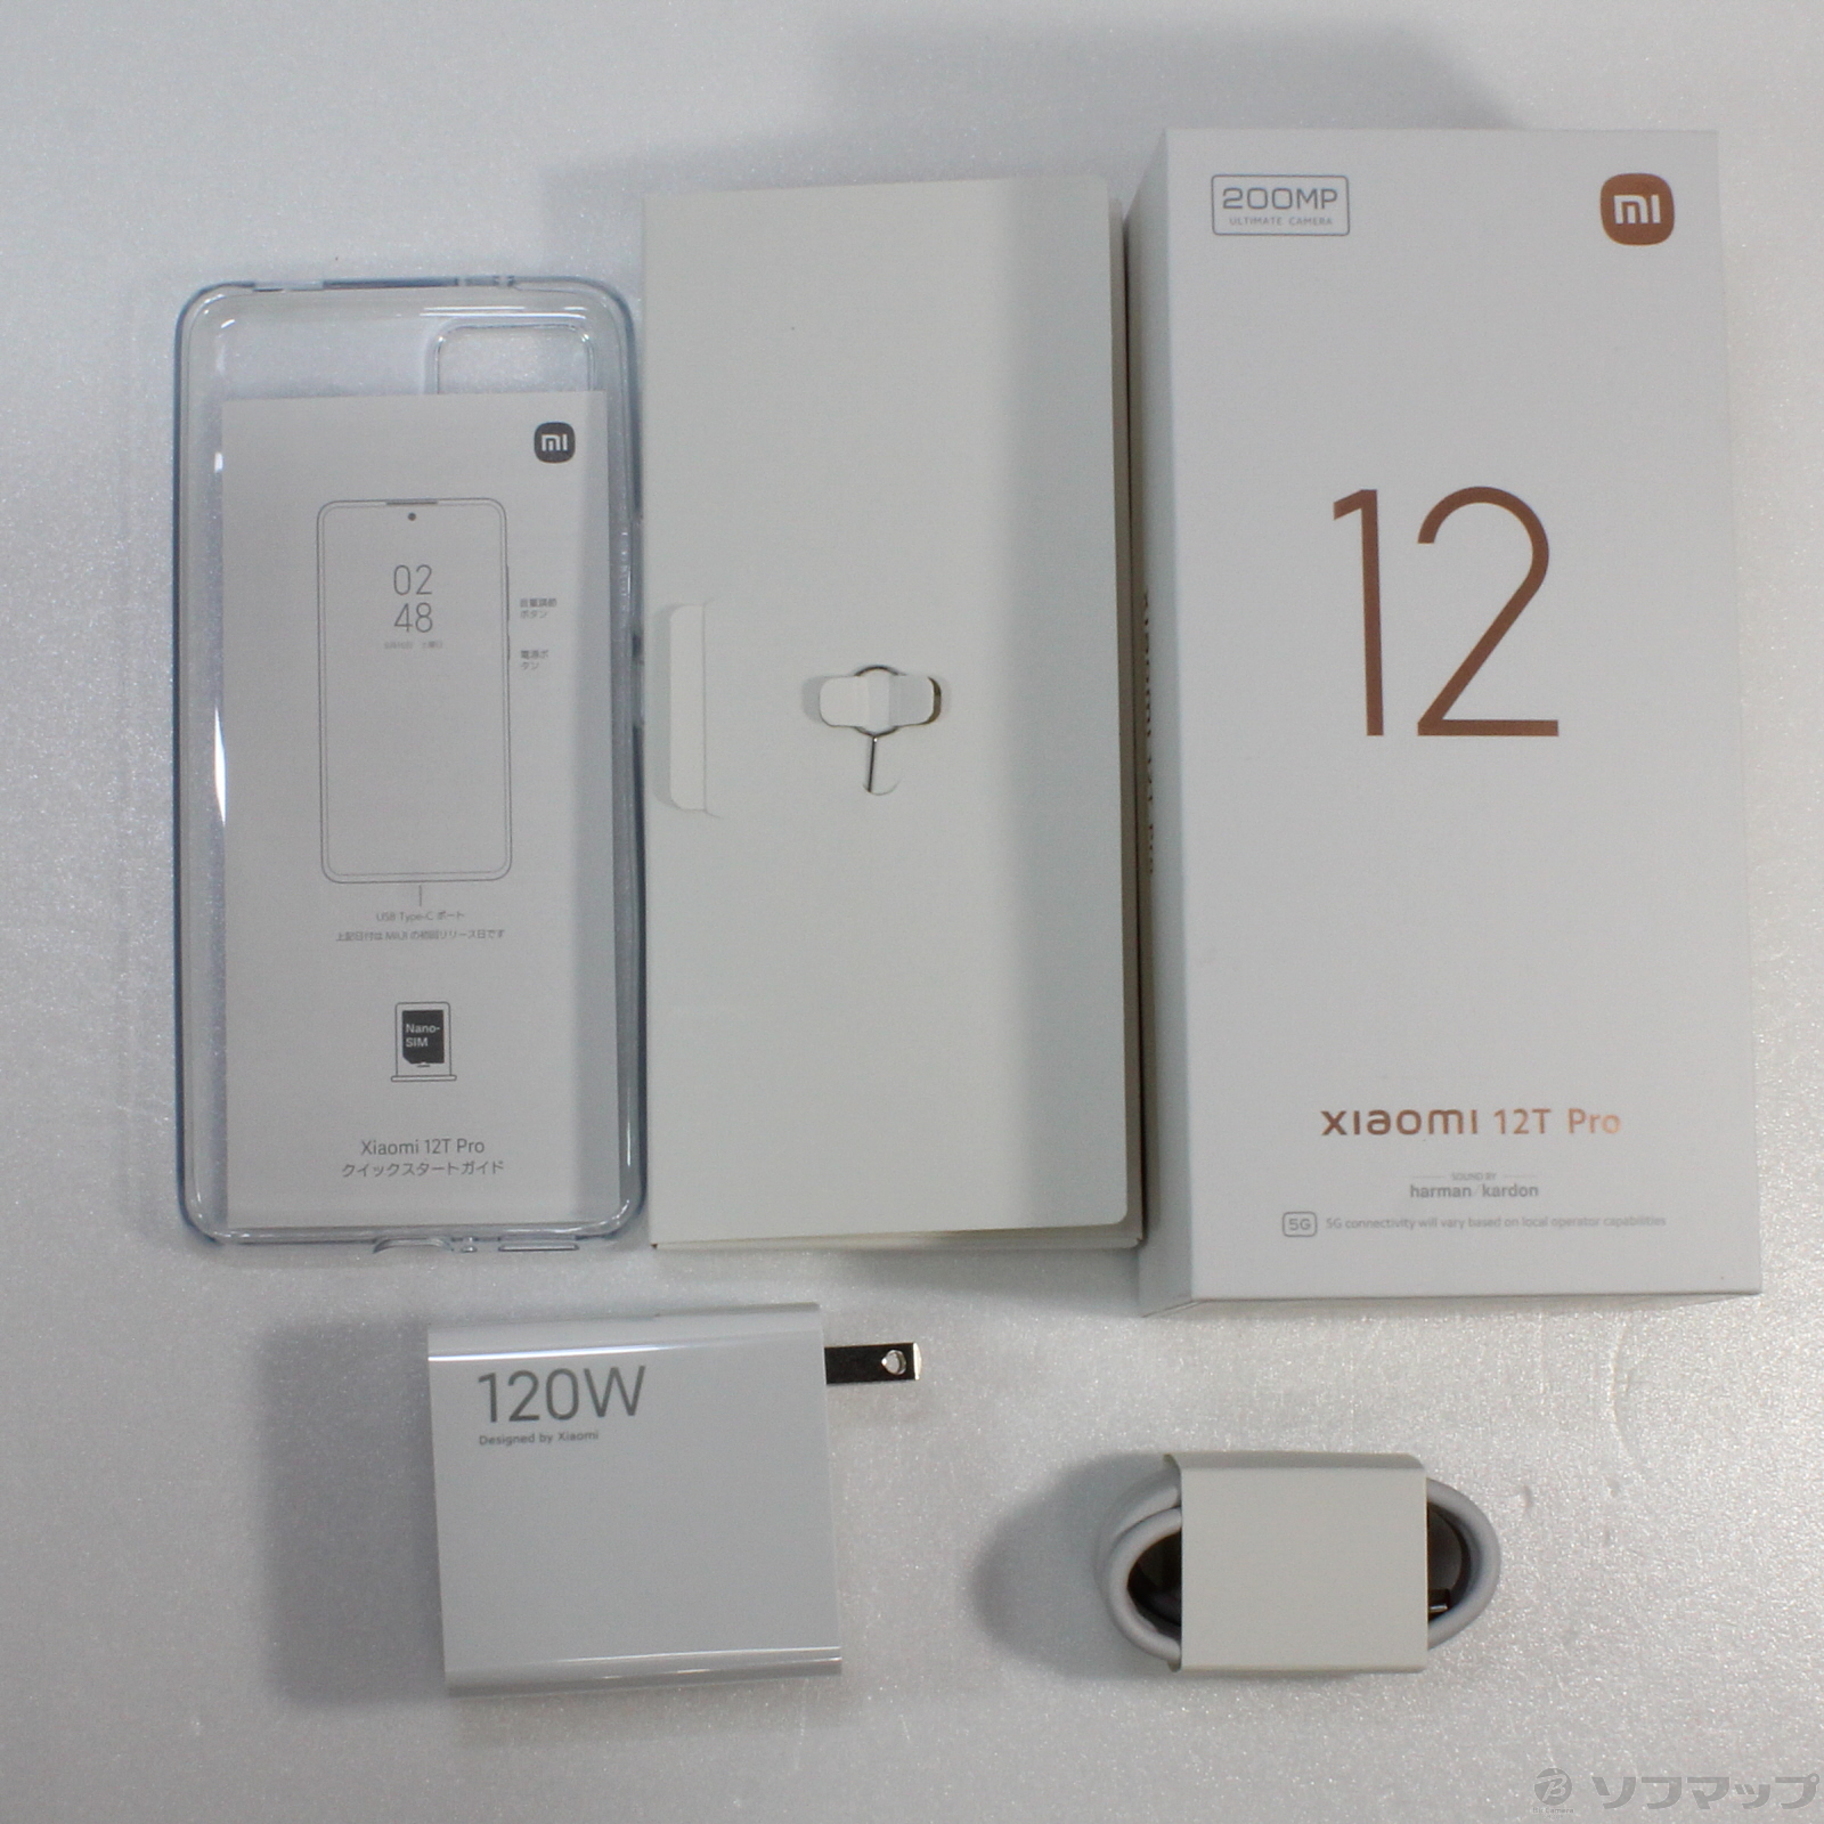 Xiaomi 12T Pro SIMフリー(公開市場向けモデル) ブルー - 携帯電話 ...